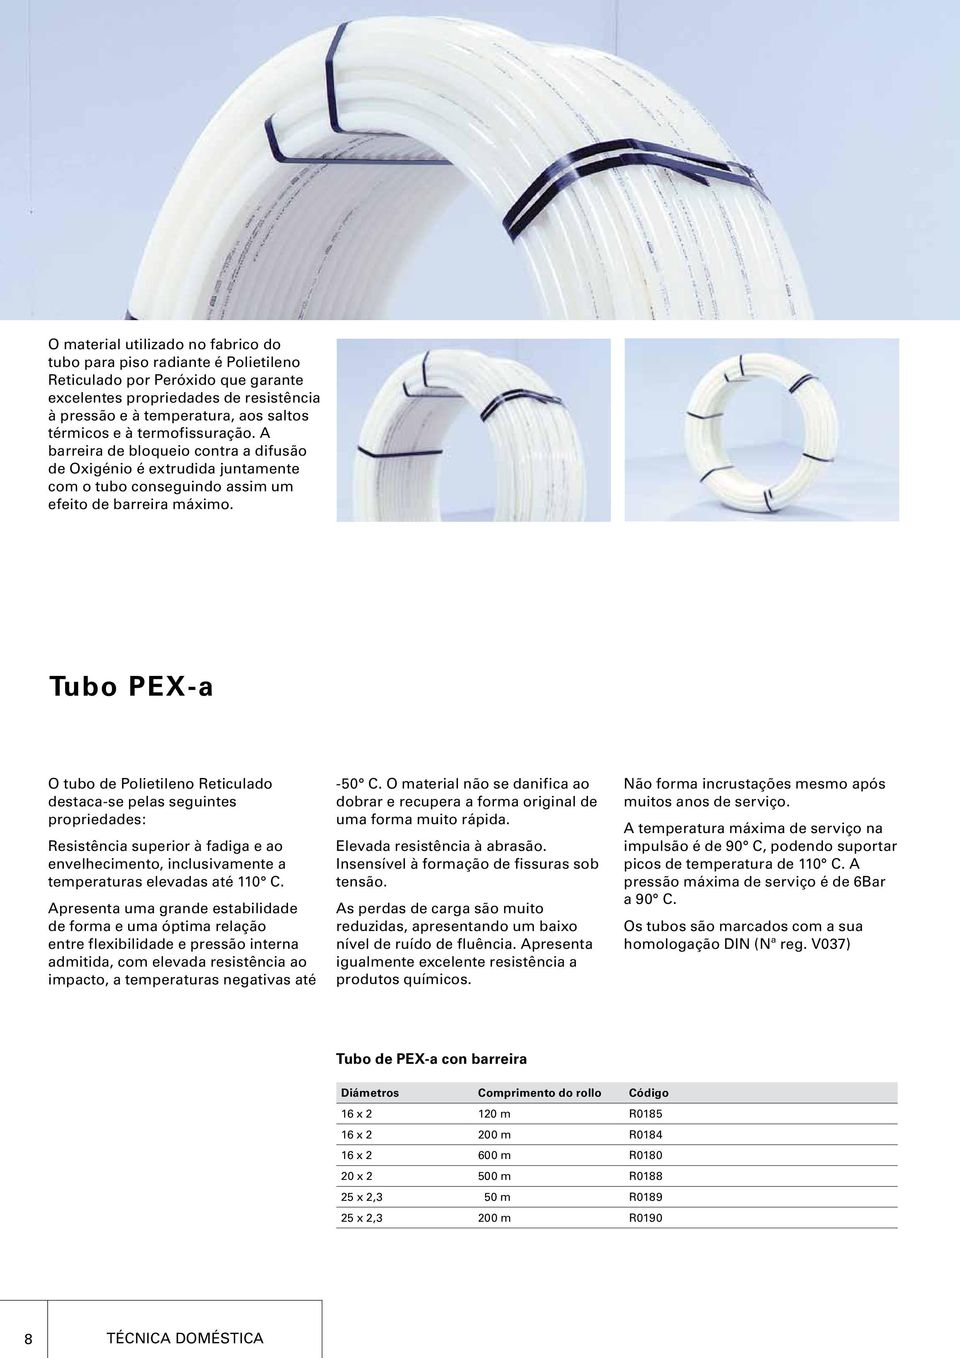 Tubo PEX-a O tubo de Polietileno Reticulado destaca-se pelas seguintes propriedades: Resistência superior à fadiga e ao envelhecimento, inclusivamente a temperaturas elevadas até 110 C.